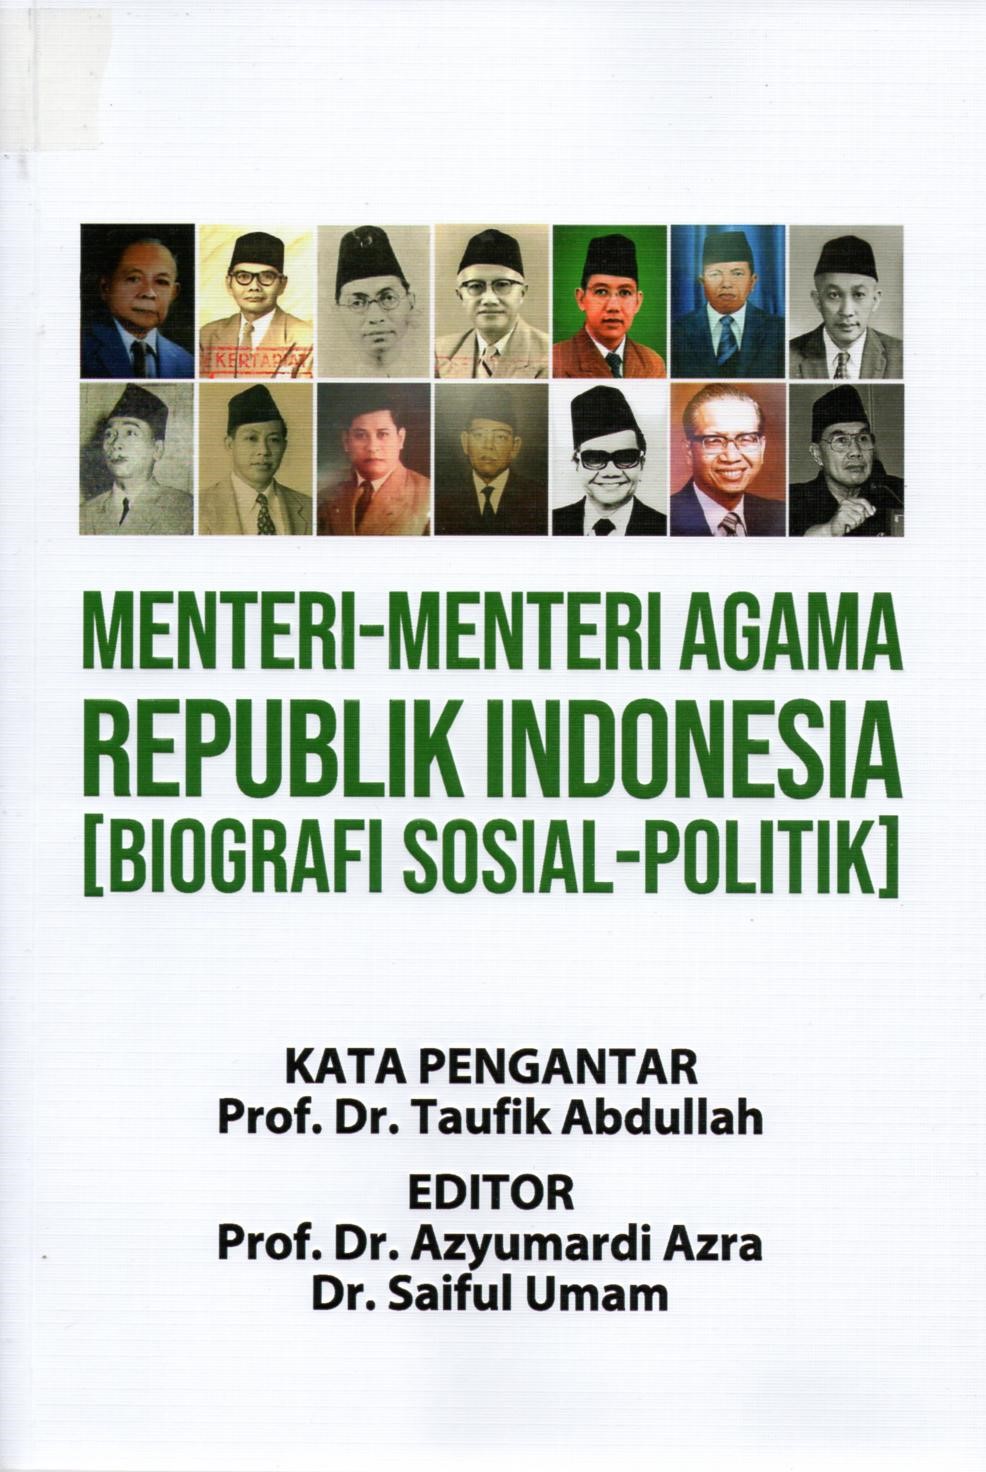 Menteri-menteri agama Republik Indonesia (era reformasi)